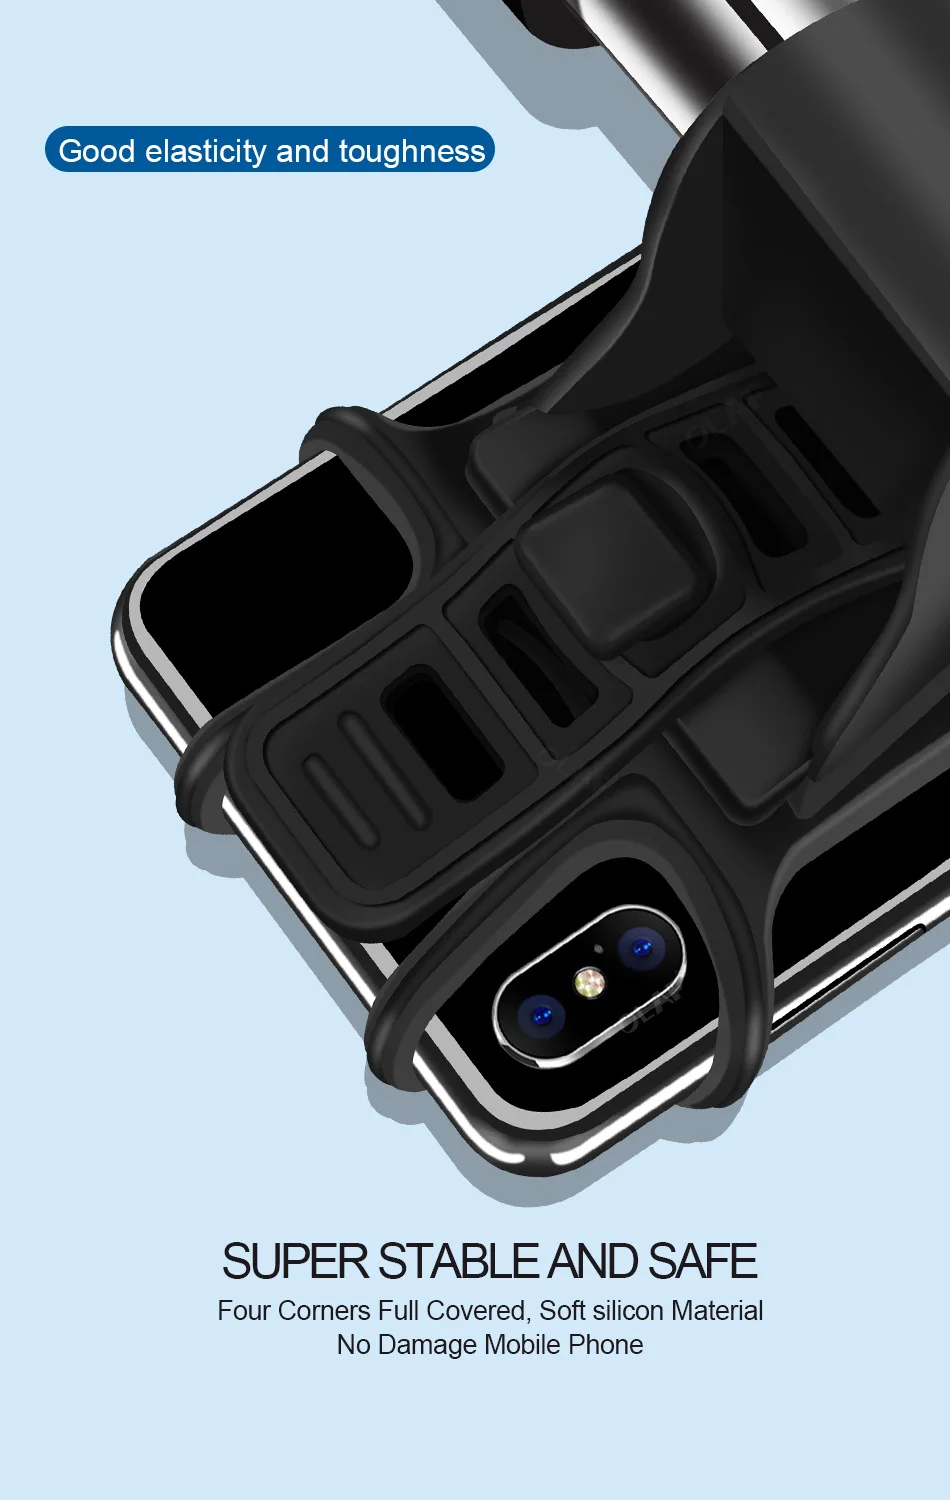 Олаф велосипедный держатель для телефона для iPhone samsung Универсальный мобильный телефон держателя телефона велосипед подставка для руля gps кронштейн